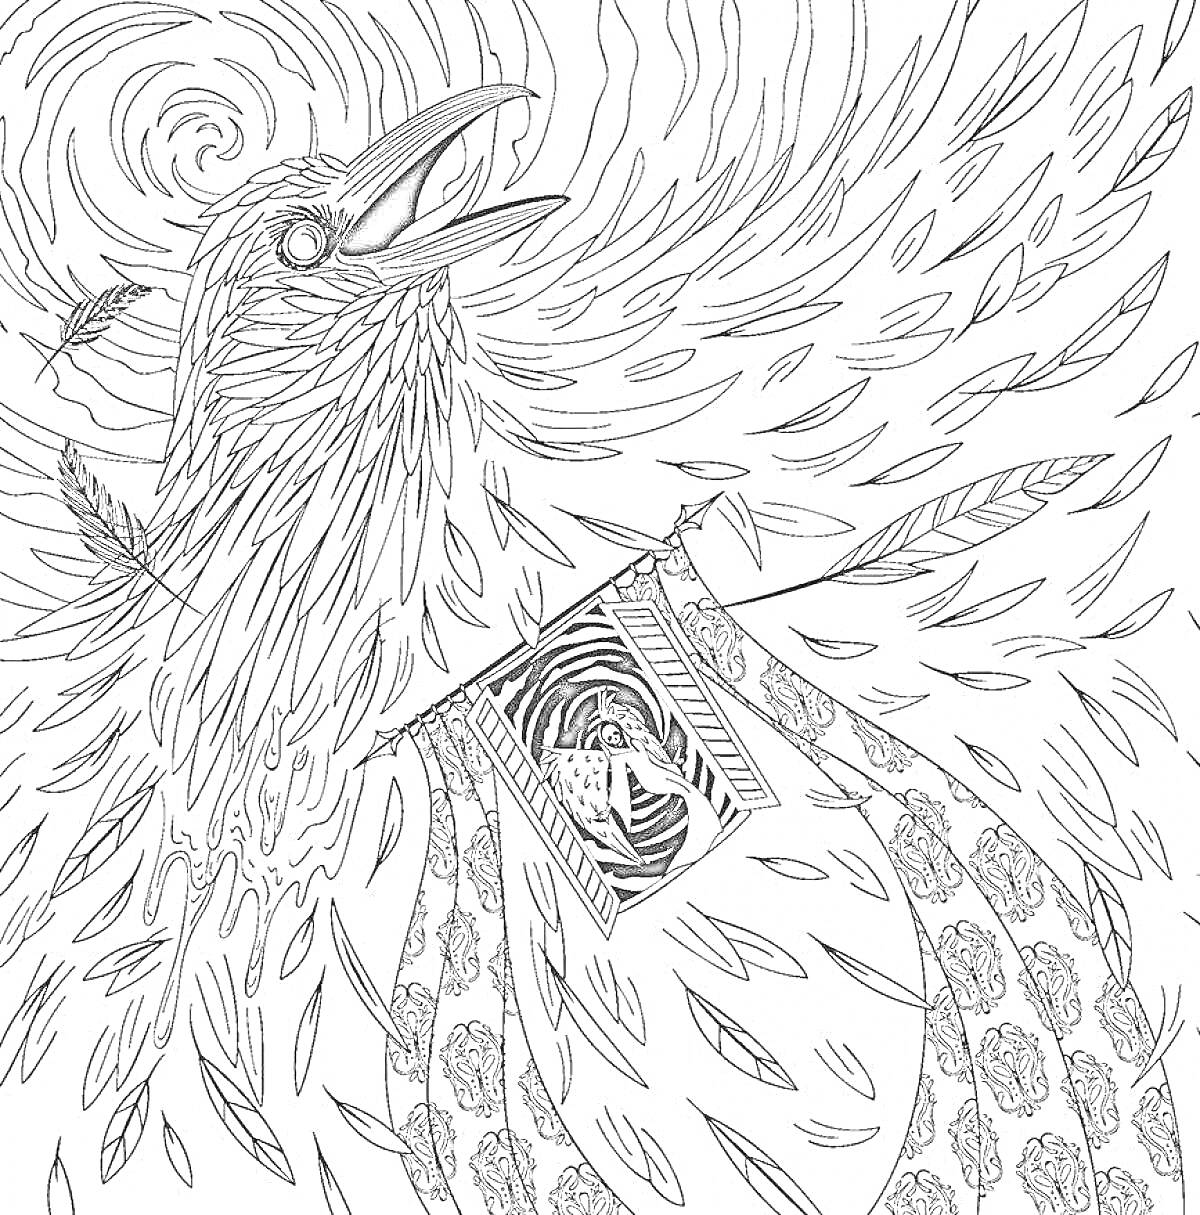 Раскраска Ворон с распахнутым клювом, в фоне перья и вращающийся узор, в груди воина на фоне лабиринта.